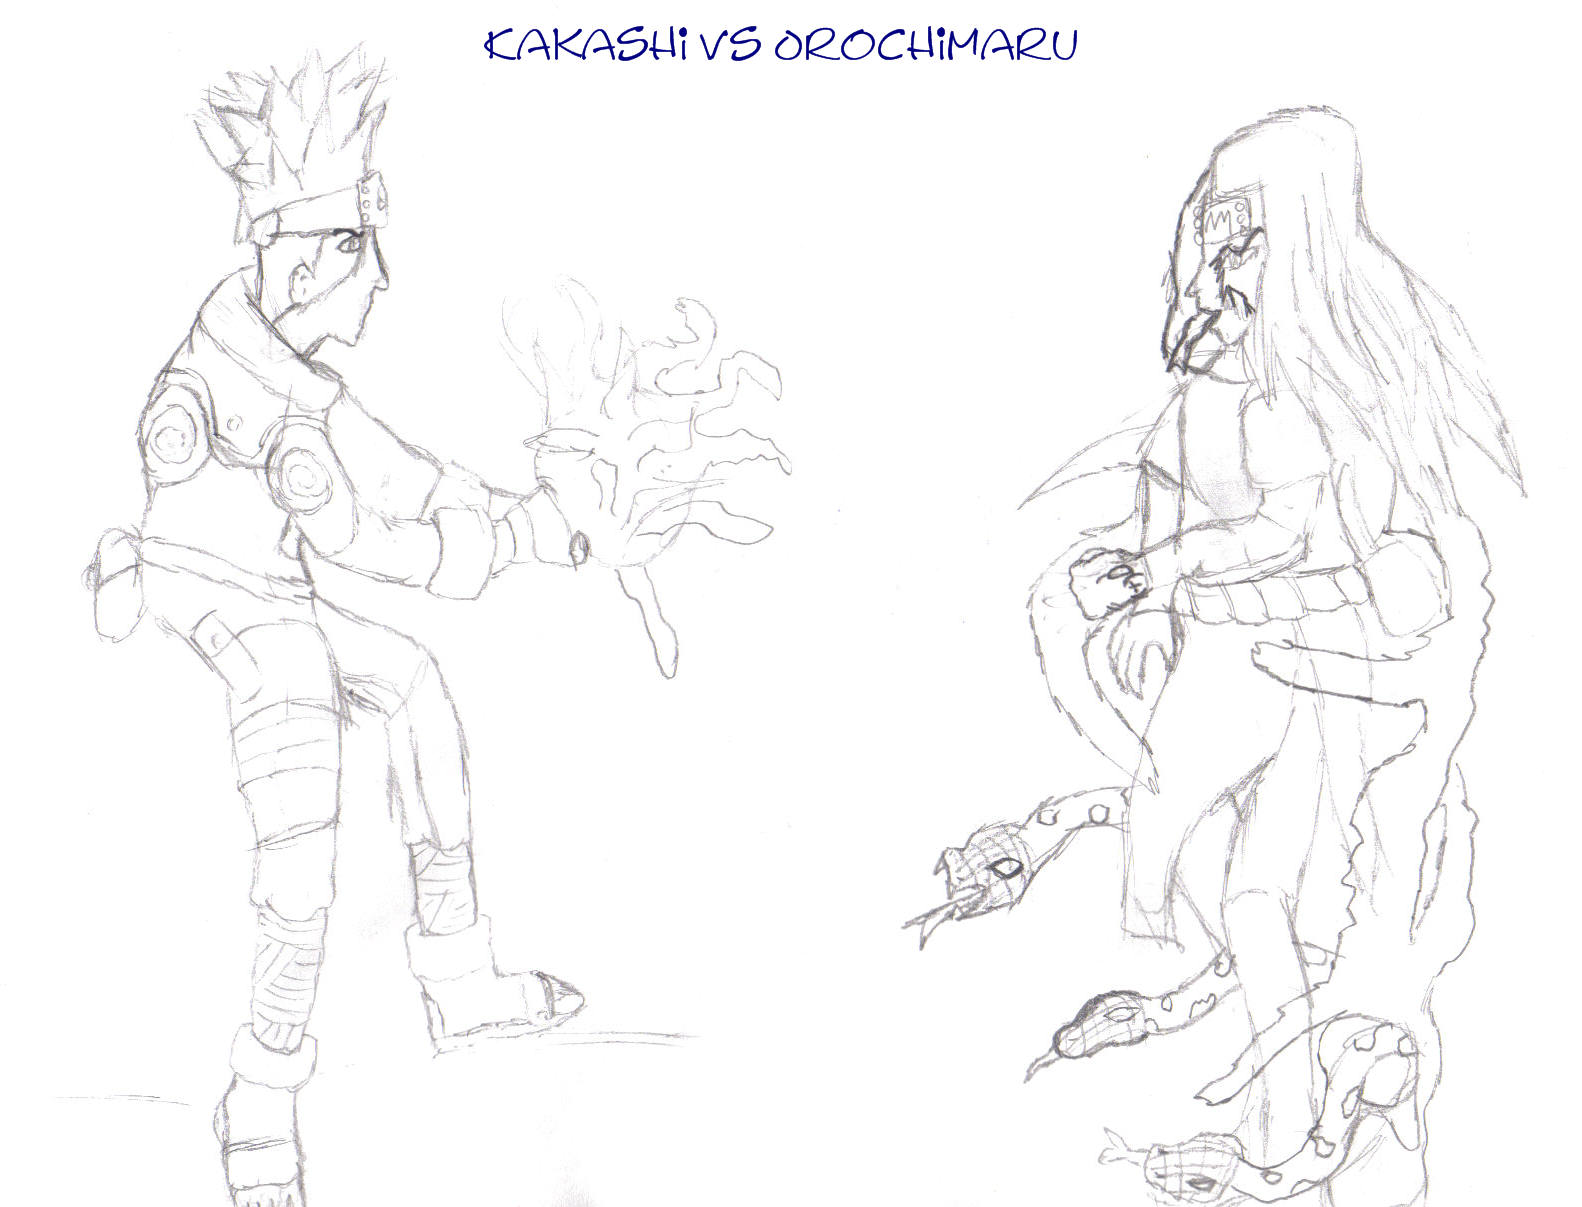 Kakashi vs Orochimaru by animefreak95